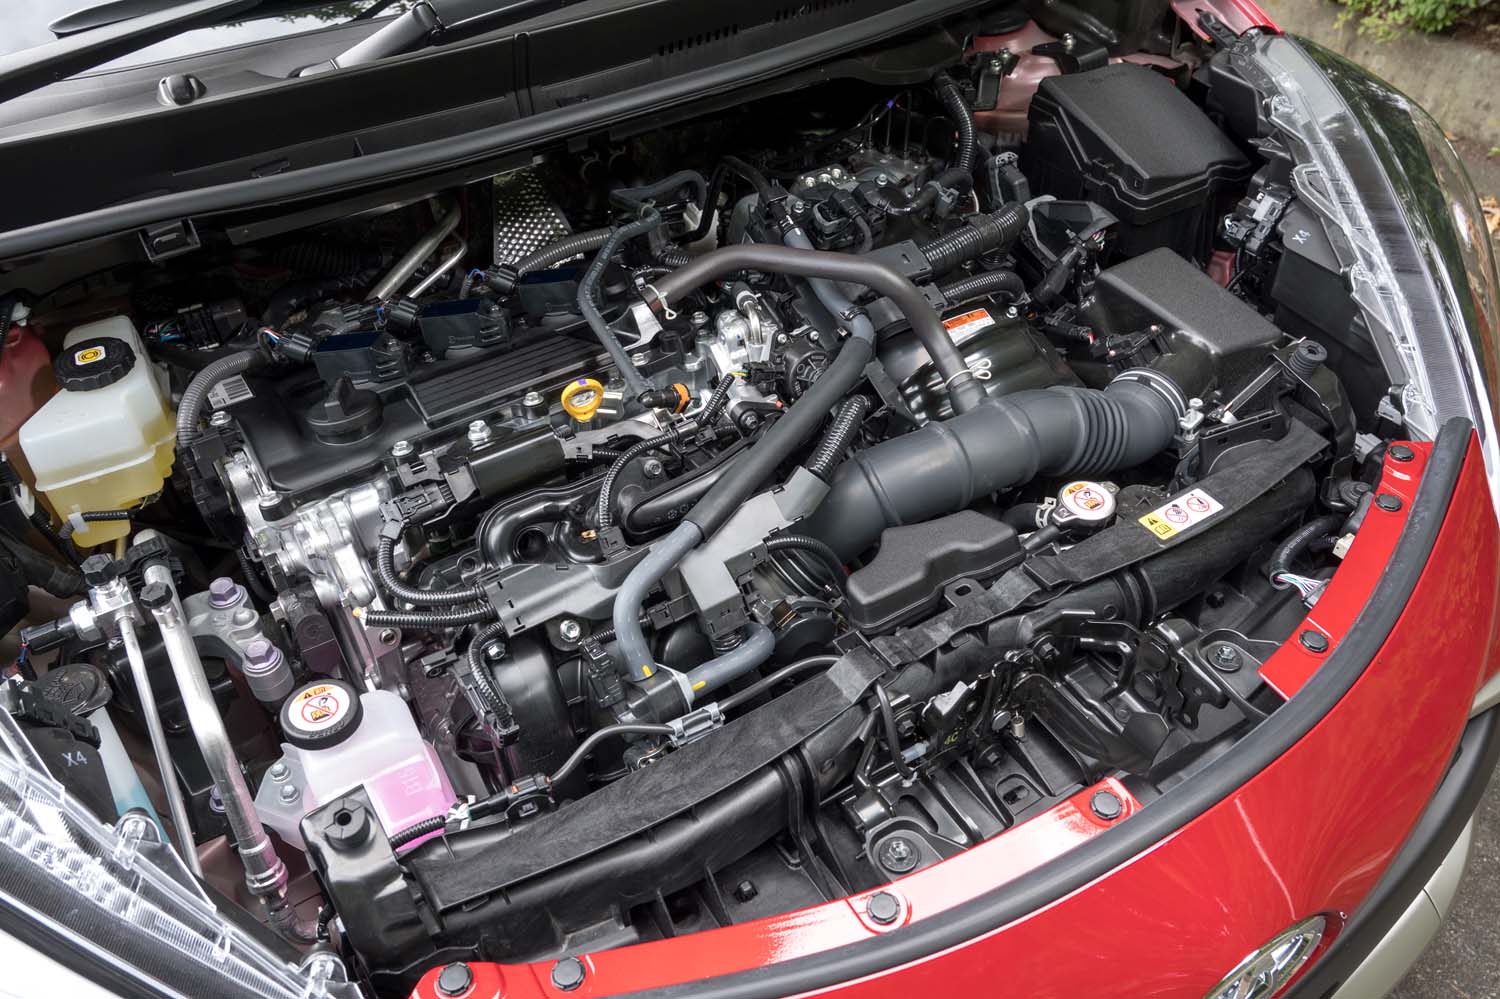 ハイブリッドのシステム最高出力は116PS。先代モデルと排気量は同じながら1.5リッターエンジンは最新の「ダイナミックフォースエンジン」に置き換えられている。